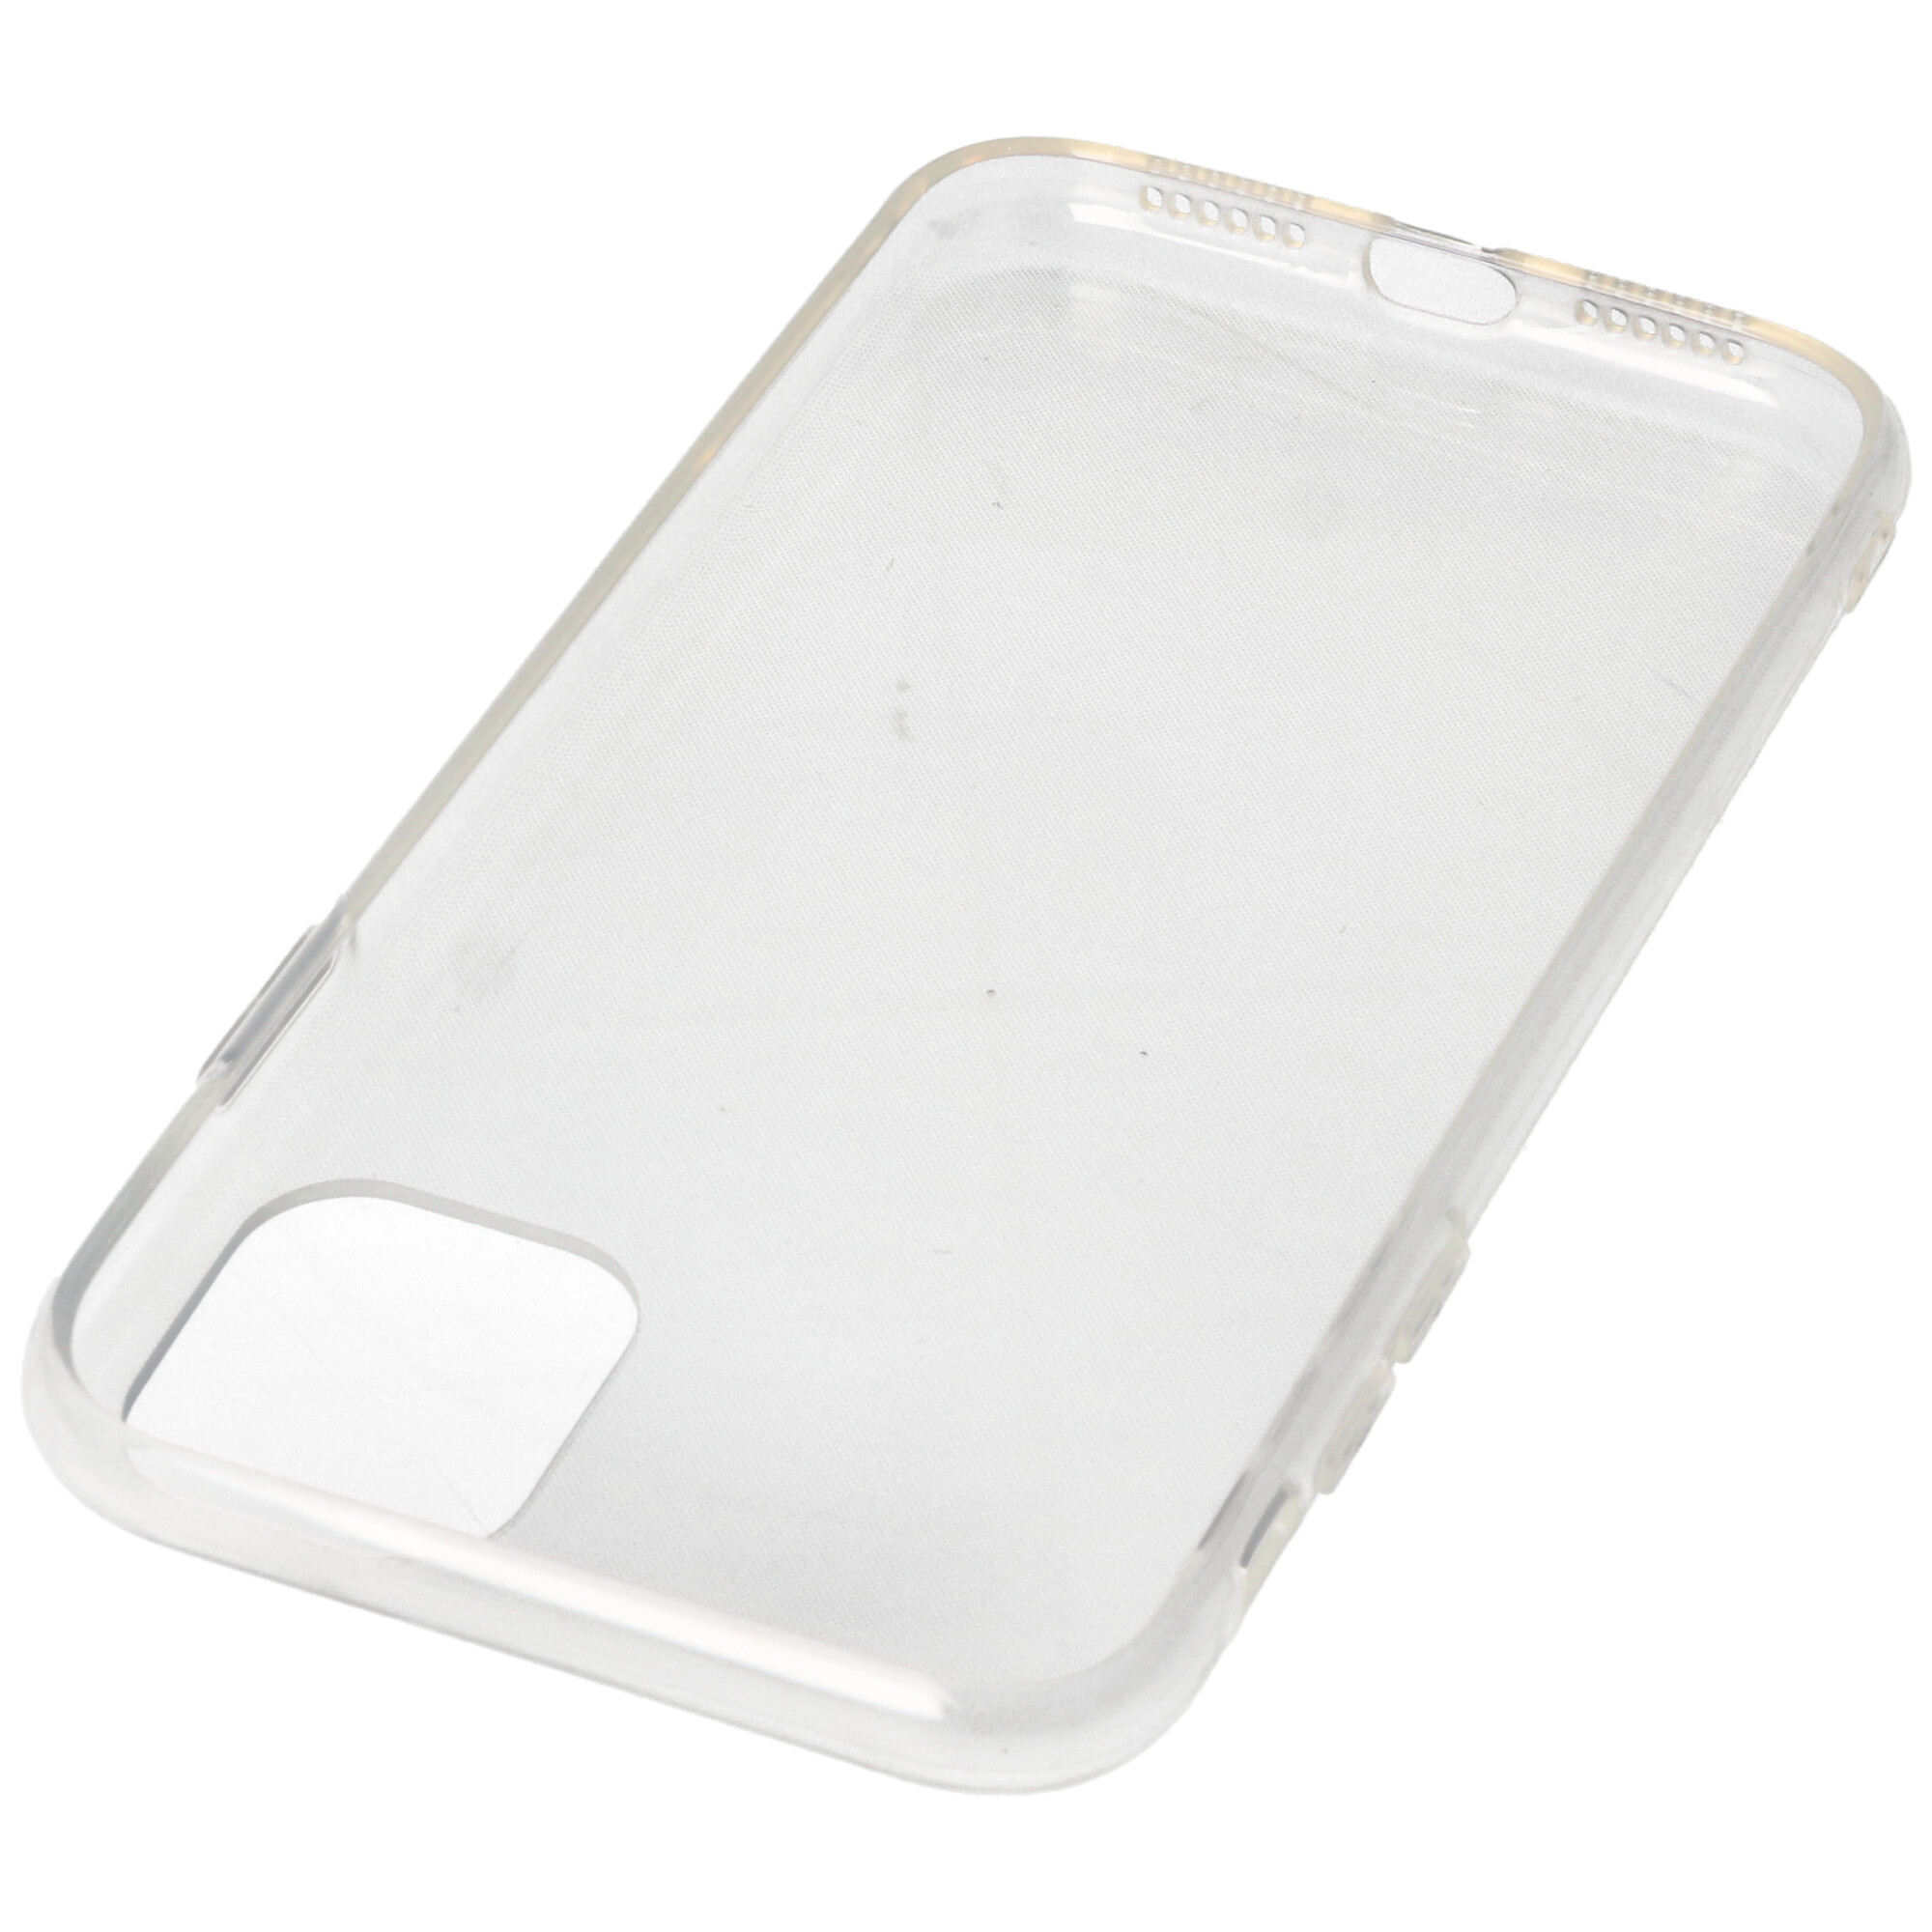 Hülle passend für Apple iPhone11 - transparente Schutzhülle, Anti-Gelb Luftkissen Fallschutz Silikon Handyhülle robustes TPU Case